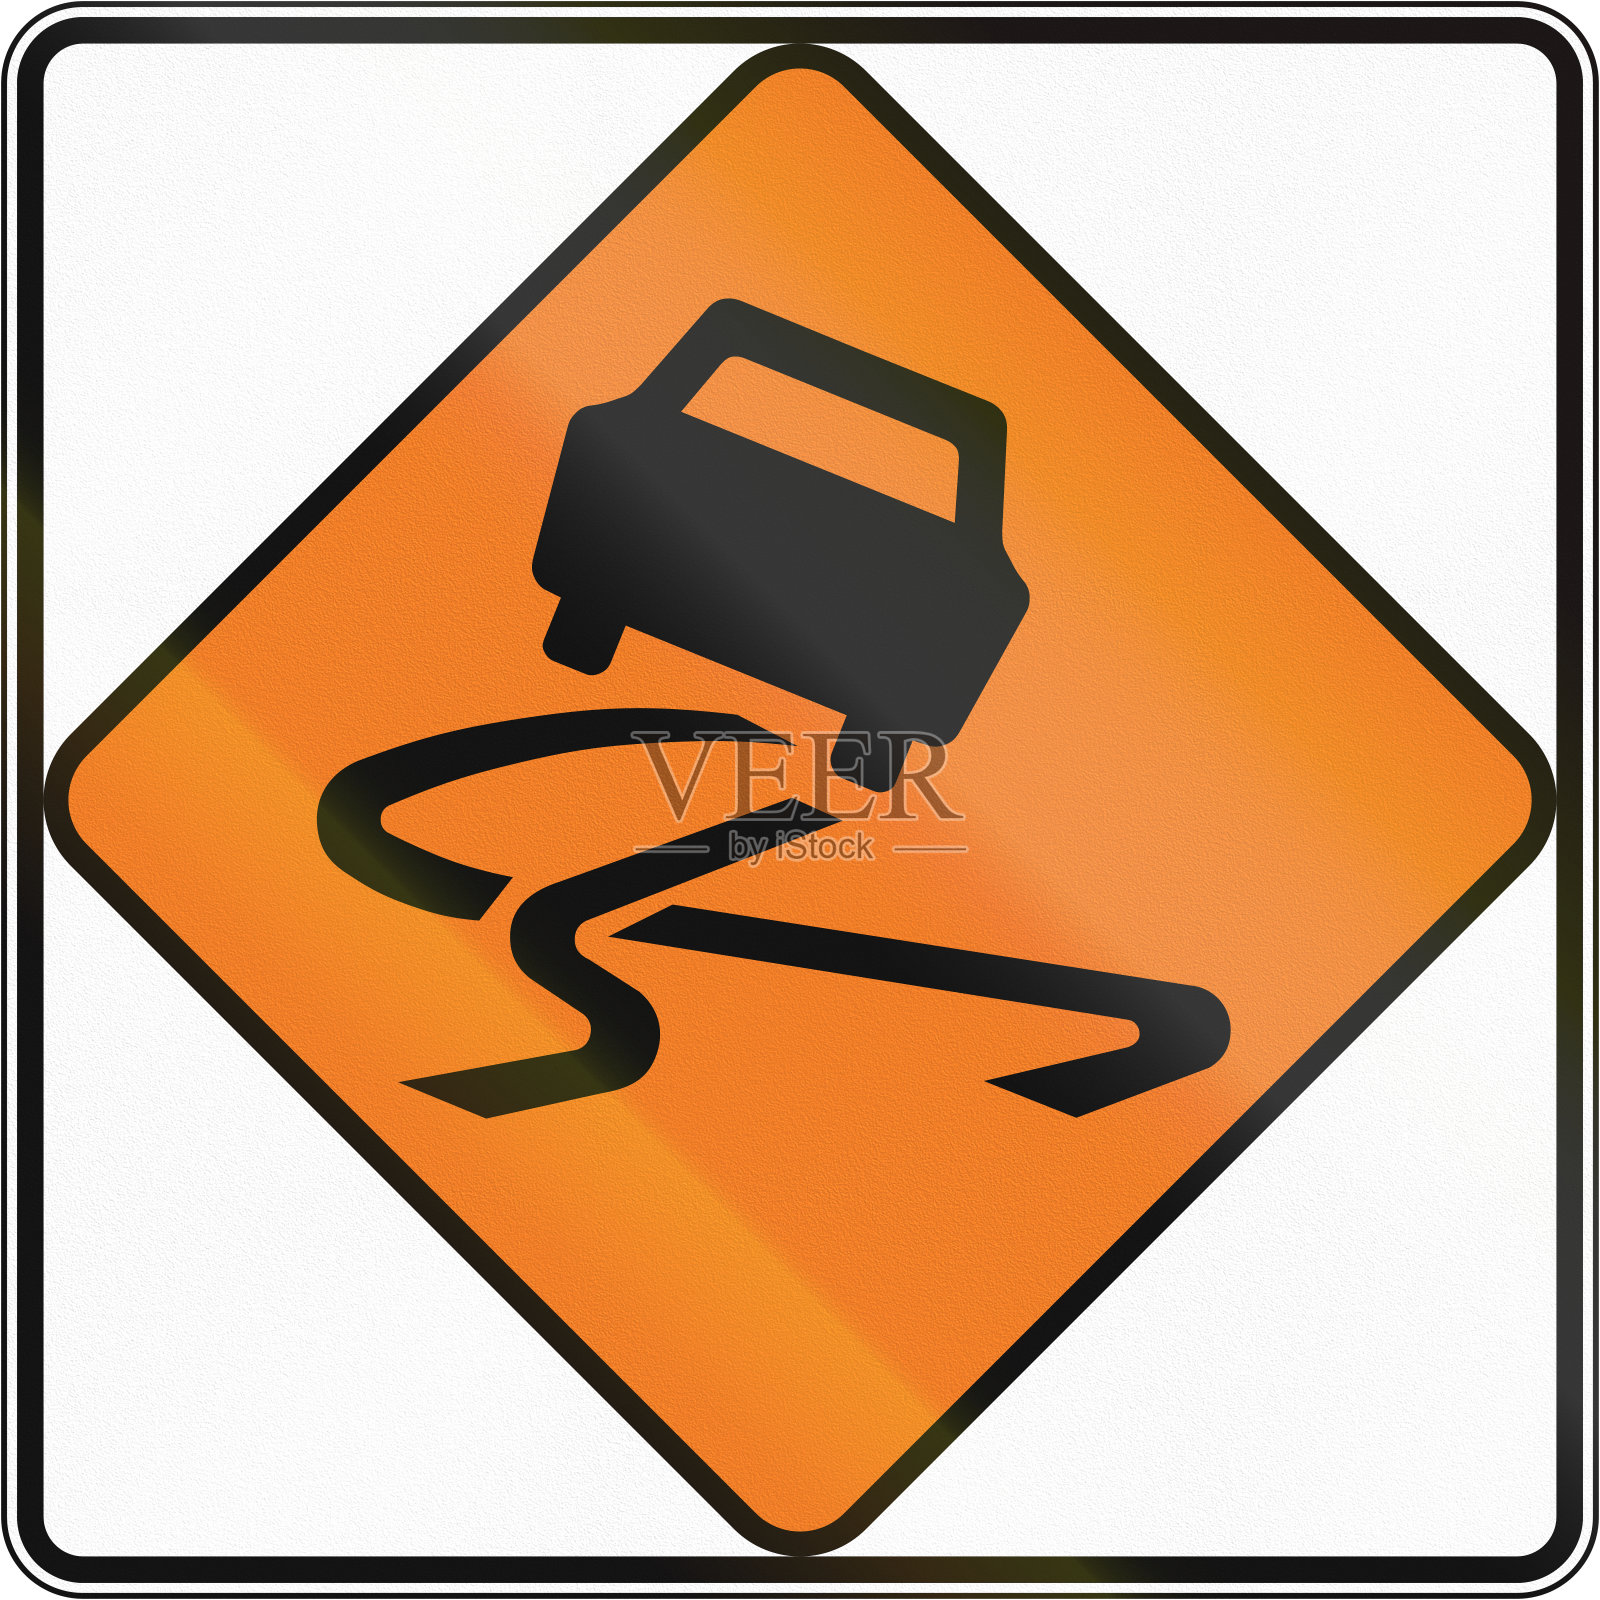 新西兰路标-滑的路面设计元素图片